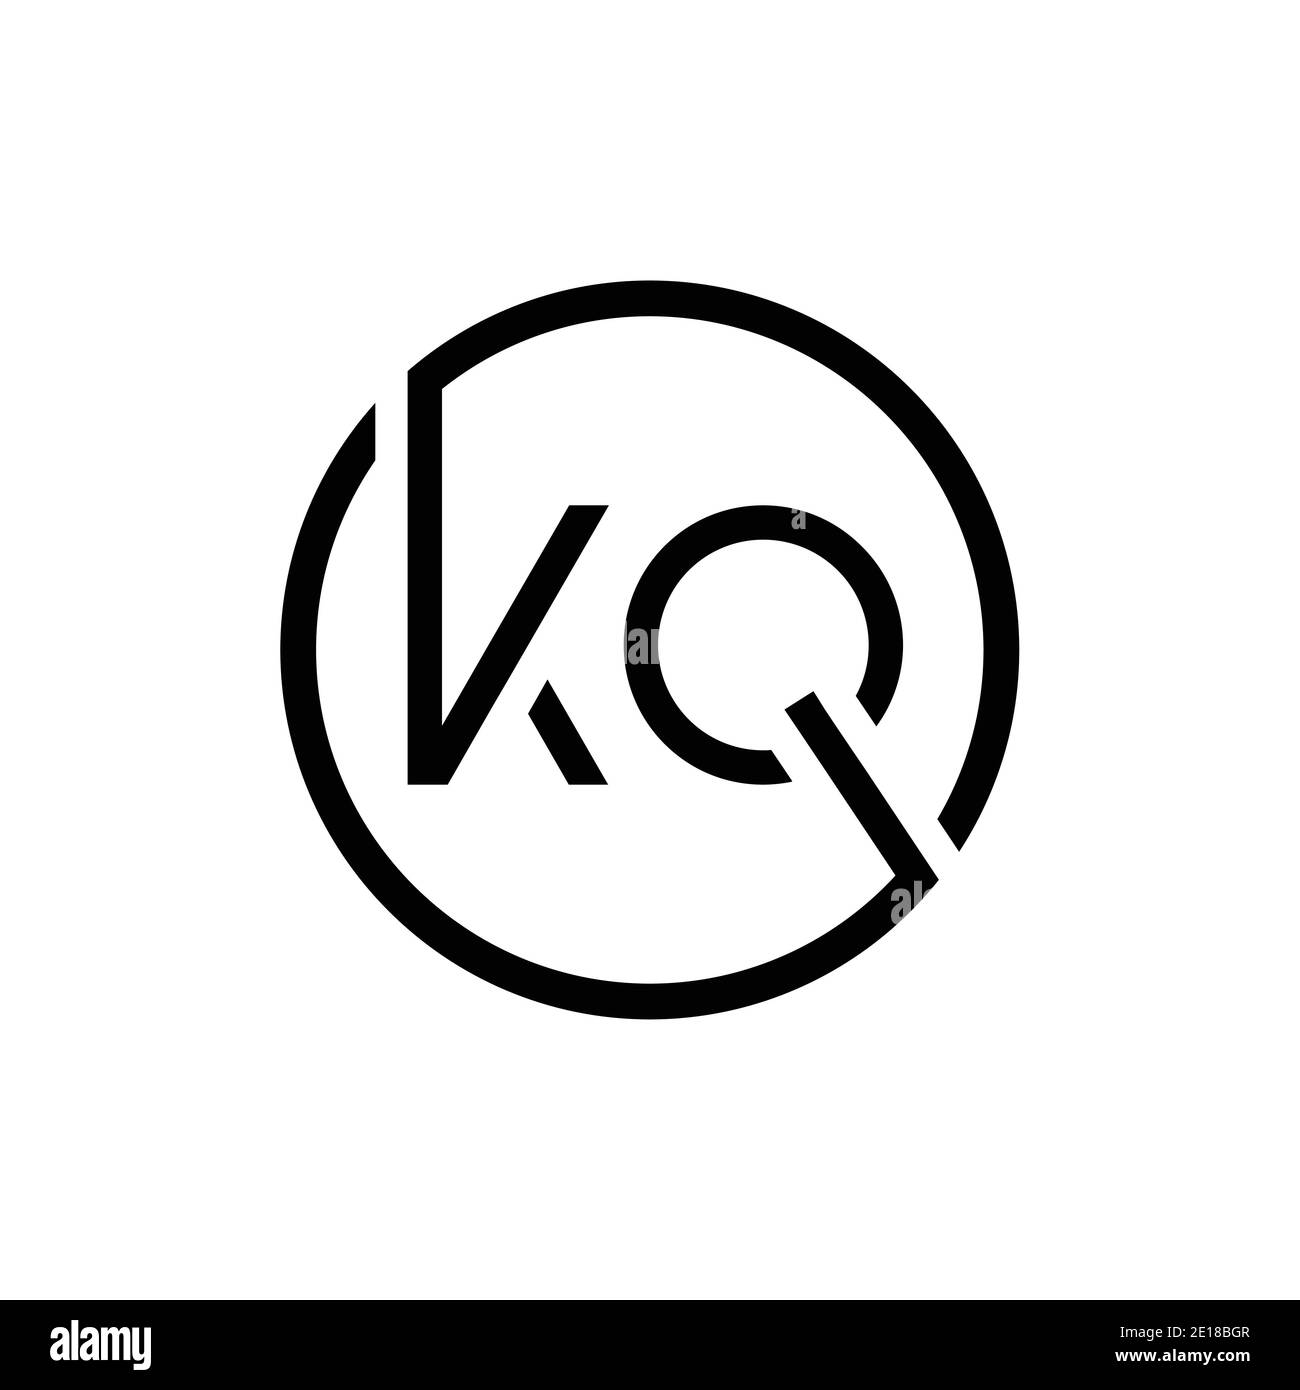 Modello vettoriale di progettazione del logo KQ con lettera collegata. Creative Circle KQ minimal, disegno piatto del logo illustrazione vettoriale Illustrazione Vettoriale